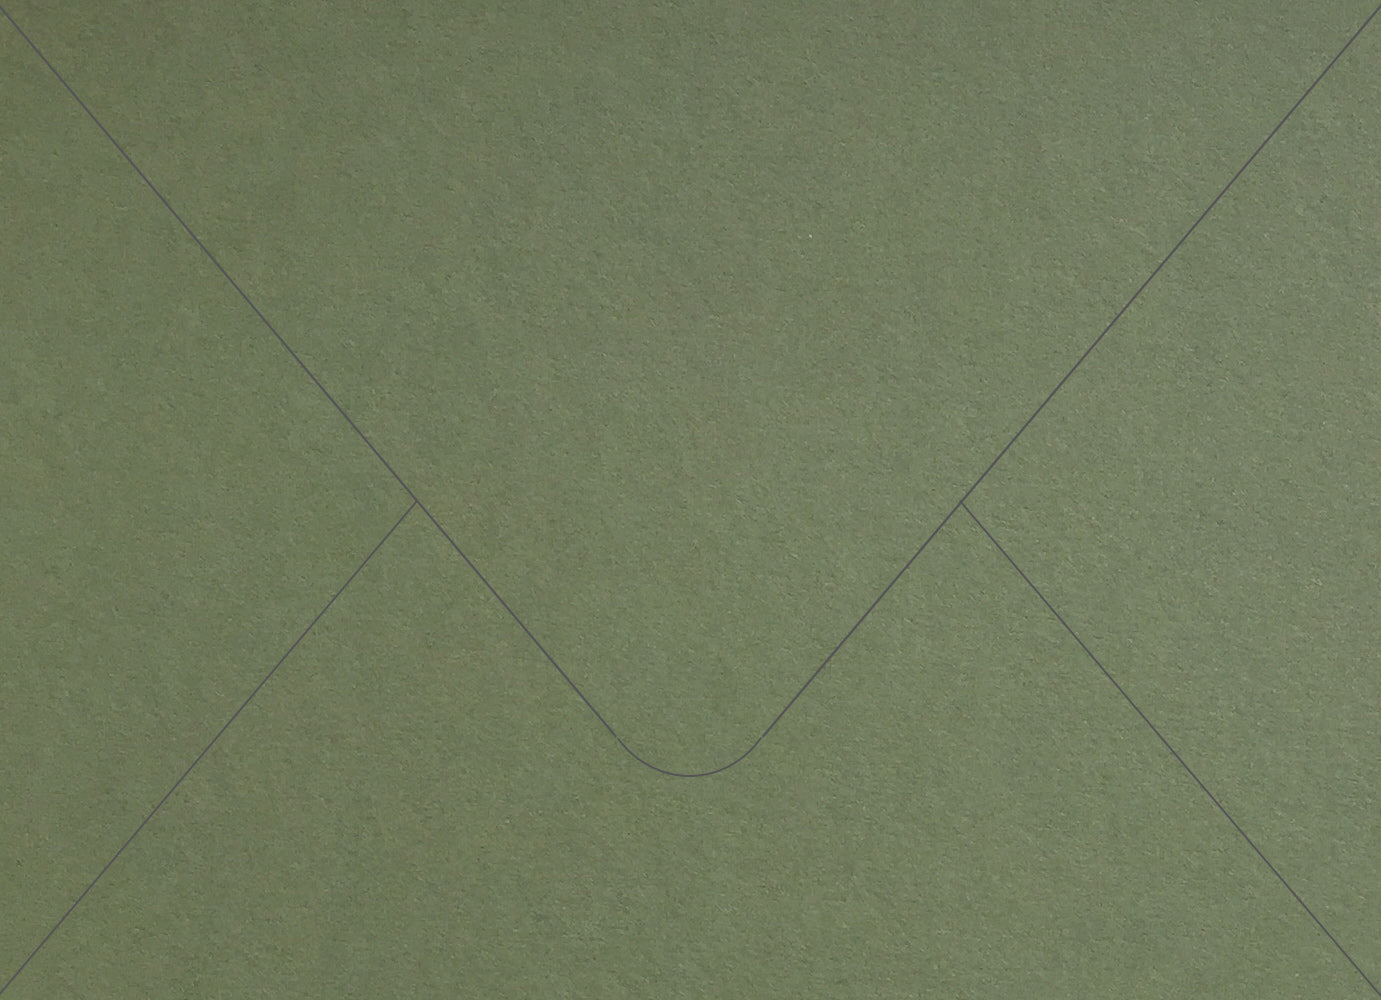 Mid-Green Colorplan Euro Envelopes